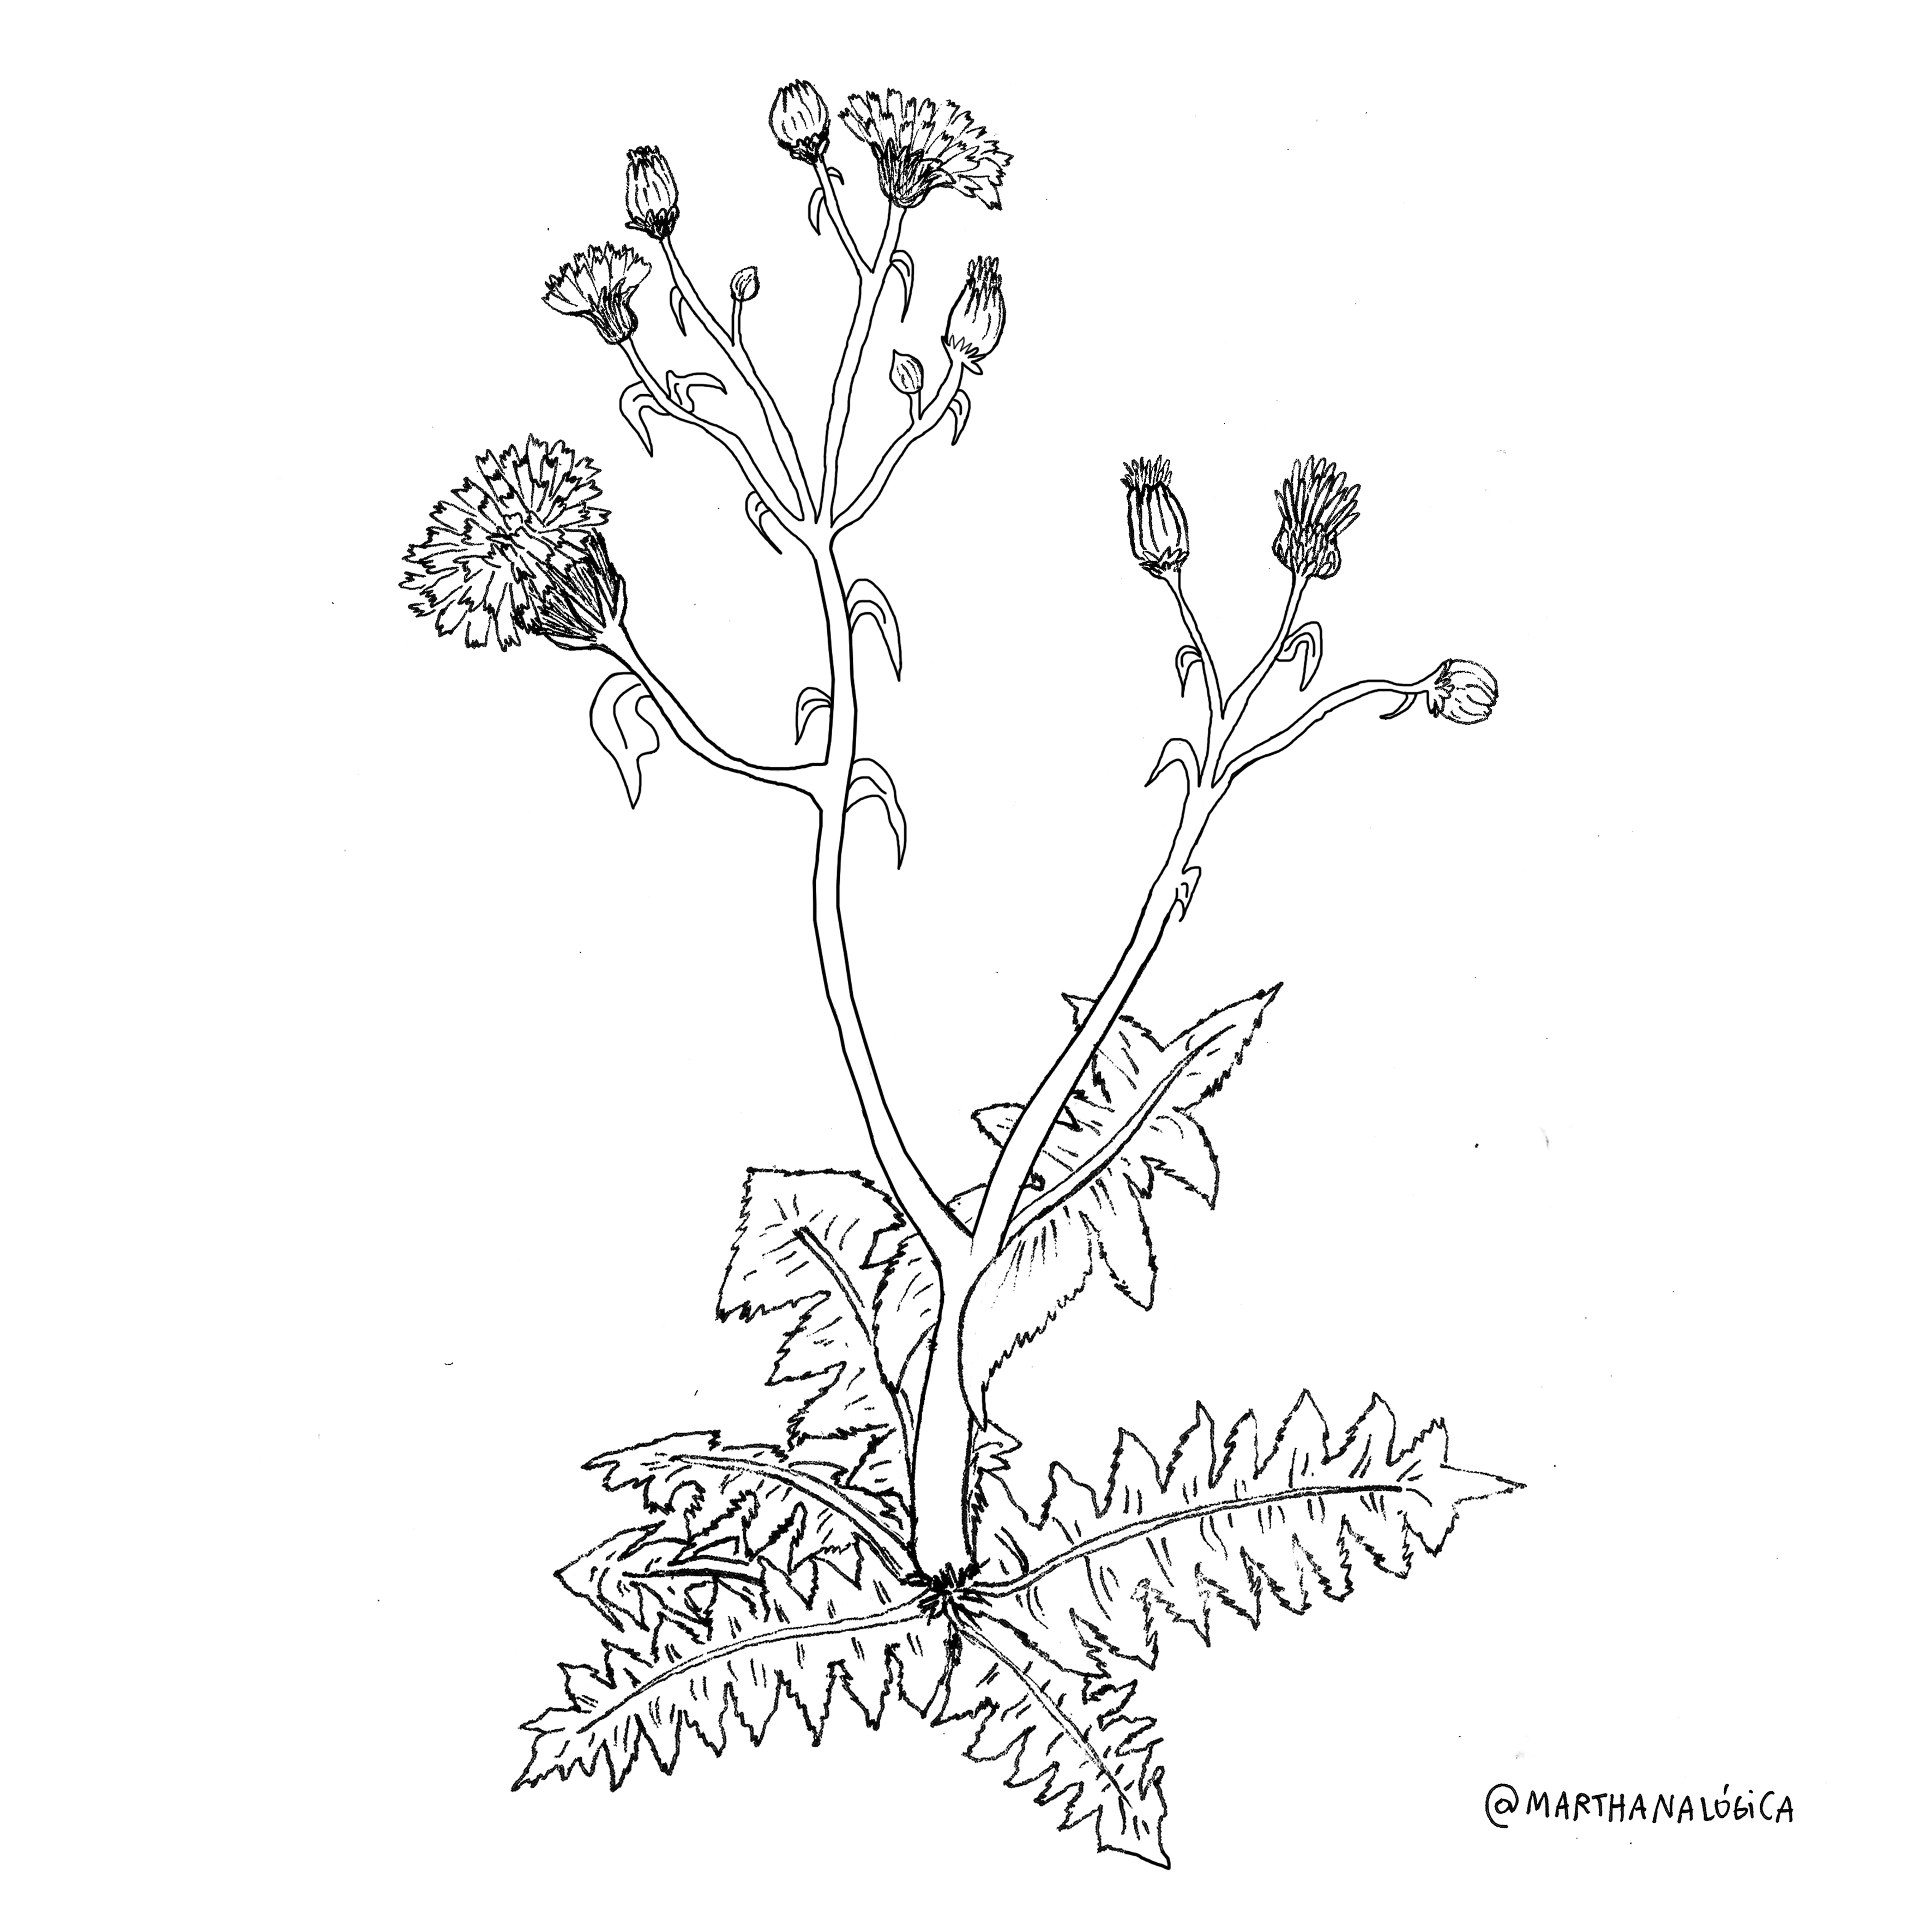 martha-analogica-yuyos-hierbas-medicinales-1